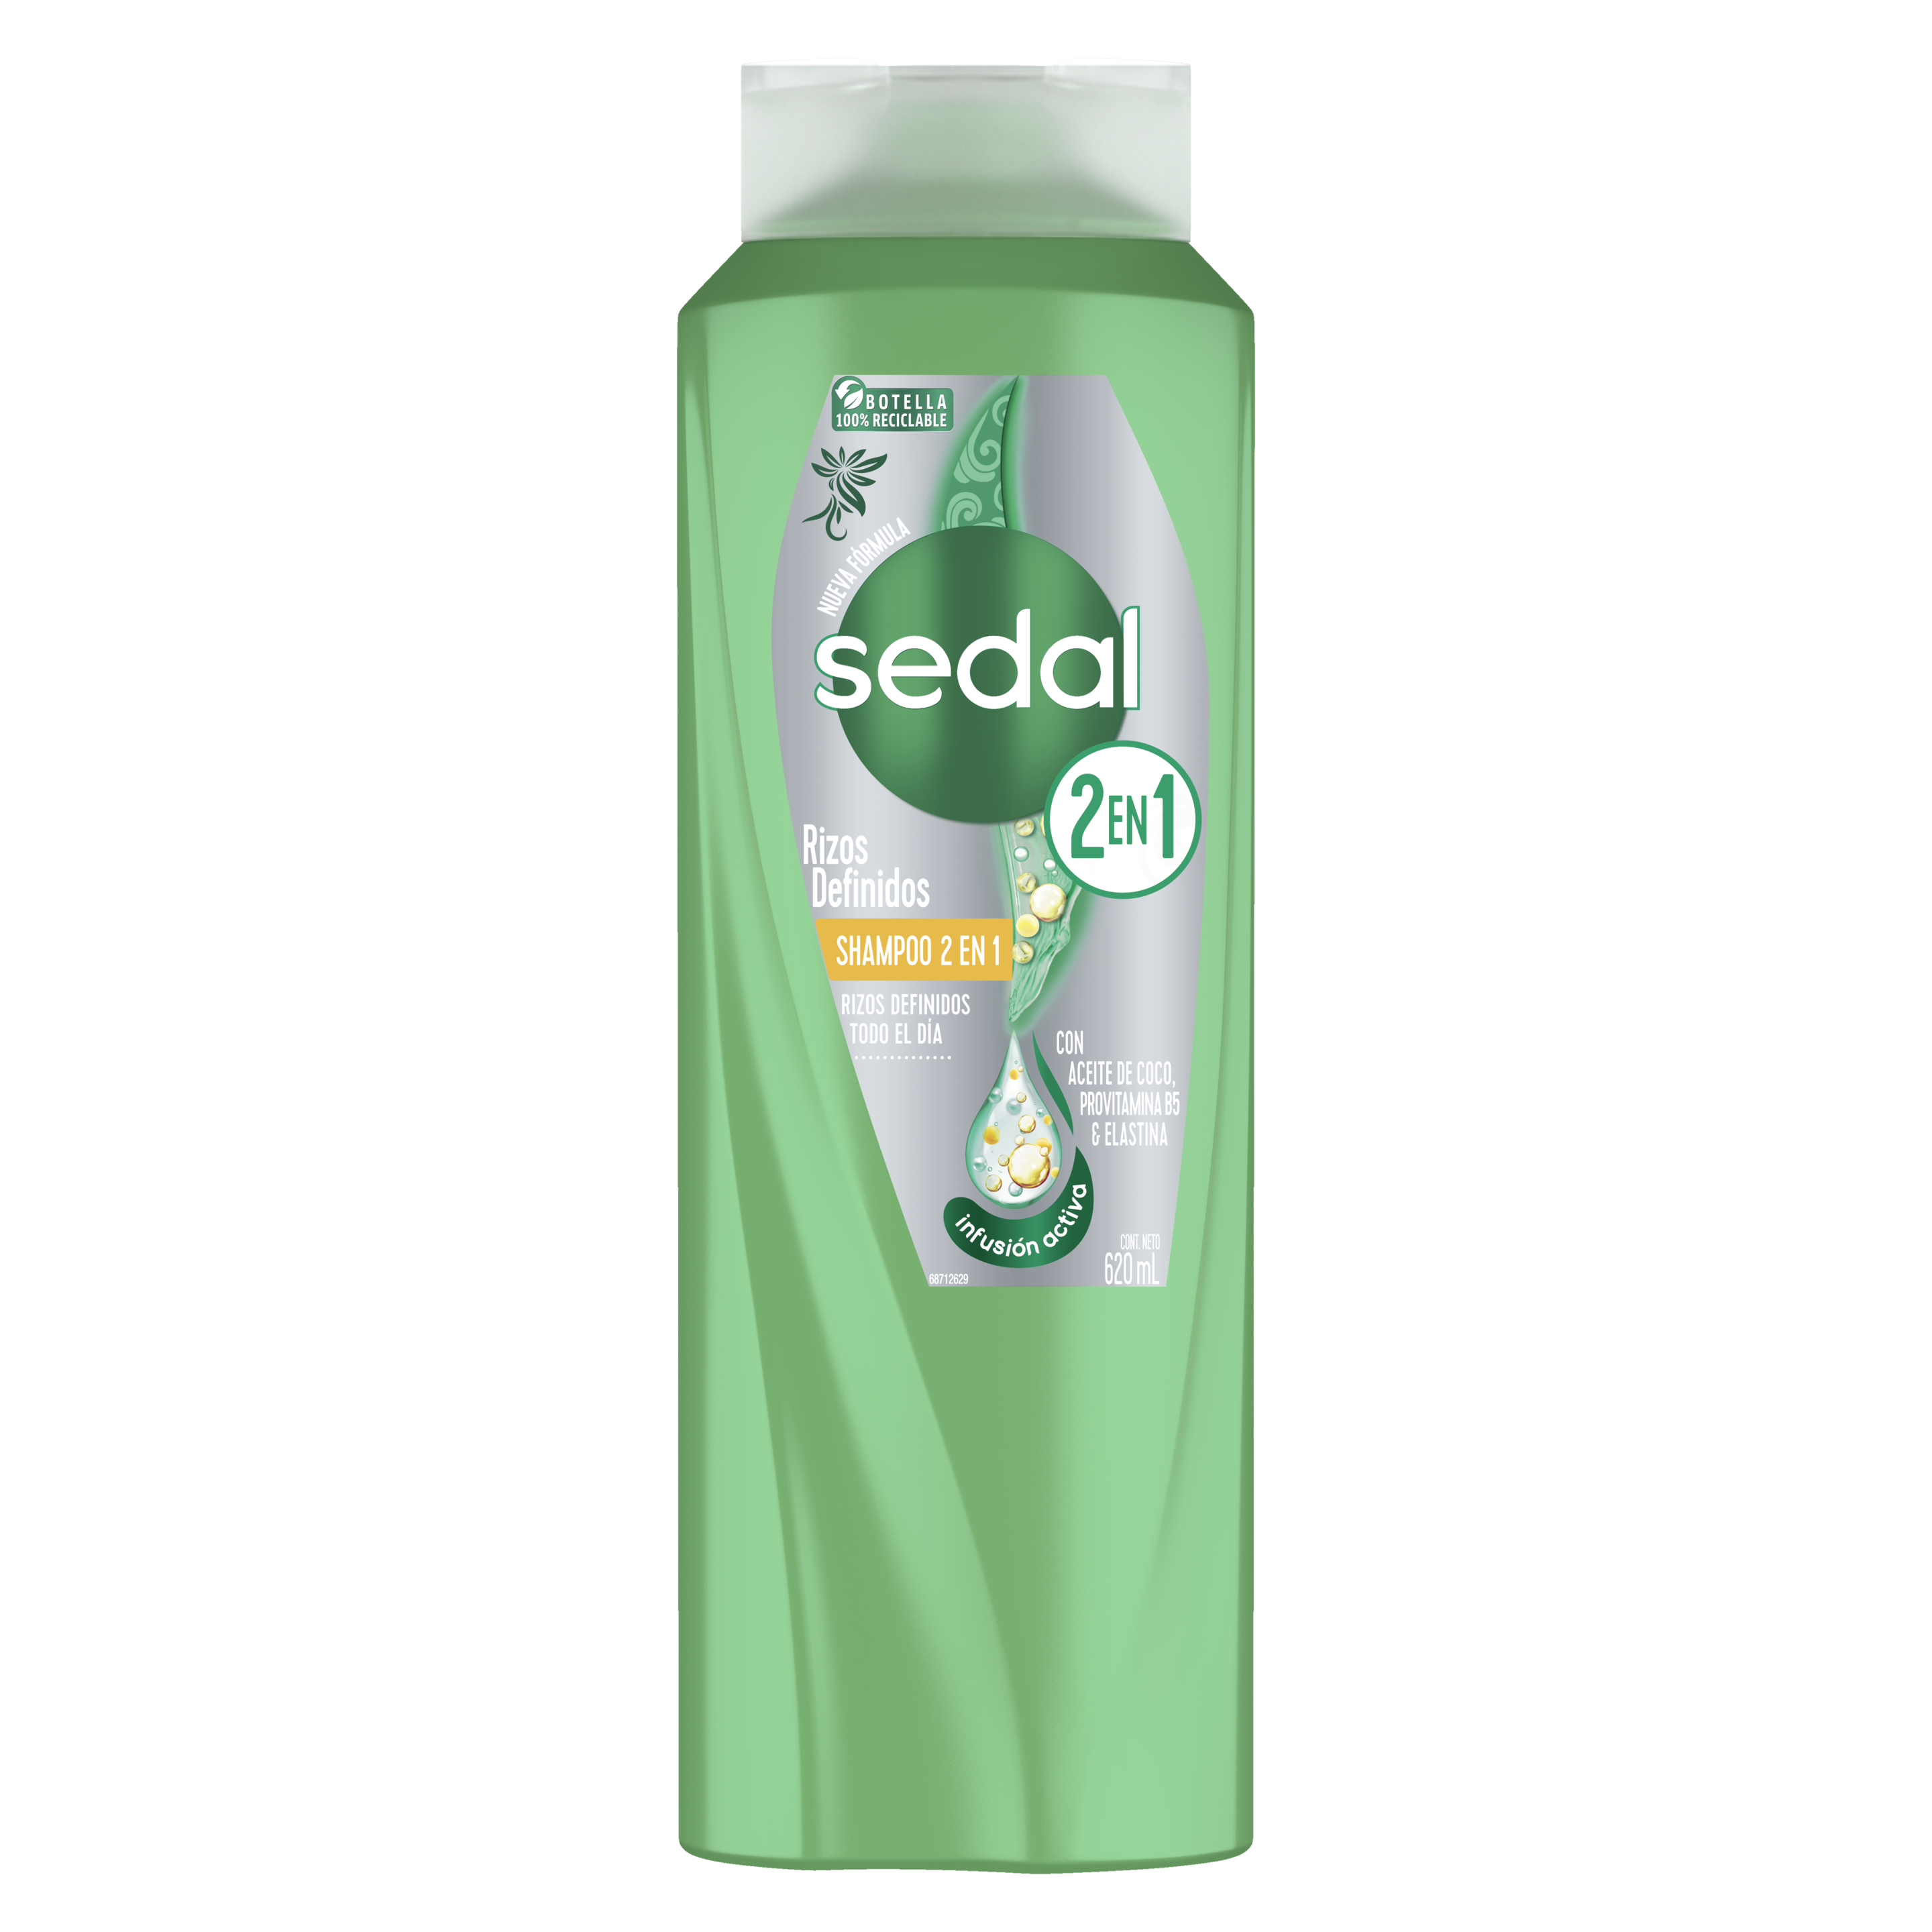 Imagen al frente del paquete Shampoo Sedal Rizos Definidos 2 EN 1 620 ml